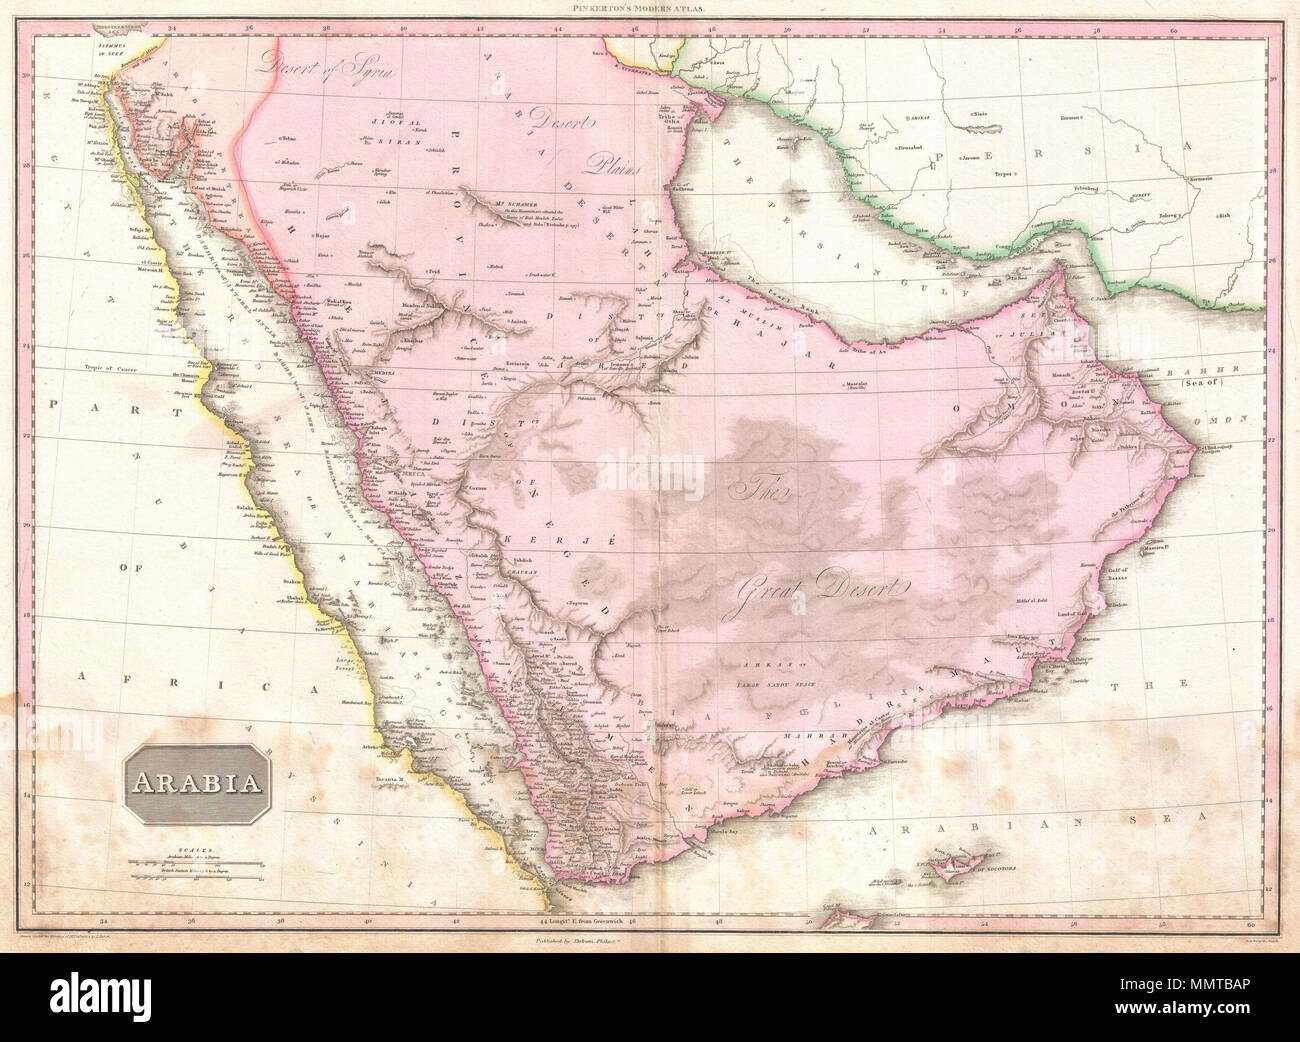 . Inglés: Extraordinaria mapa de gran formato de Arabia, publicado en 1818 por el cartógrafo John Pinkerton. Centrado en el desierto de la provincia, este mapa Neged detalles toda la península arábiga, así como el Mar Rojo, el Golfo Pérsico, y las partes adyacentes de África y Persia. Abarca los países de la moderna Arabia Saudita, Yemen, los Emiratos Árabes Unidos, Omán, Qatar y Kuwait. Pinkerton ofrece un nivel de detalle extraordinario en todo observando detalles tanto físicos como políticos. Cuando este mapa fue realizado en el interior de Arabia era poco conocido en los círculos europeos. La mayoría del material cartográfico utilizado para compo Foto de stock